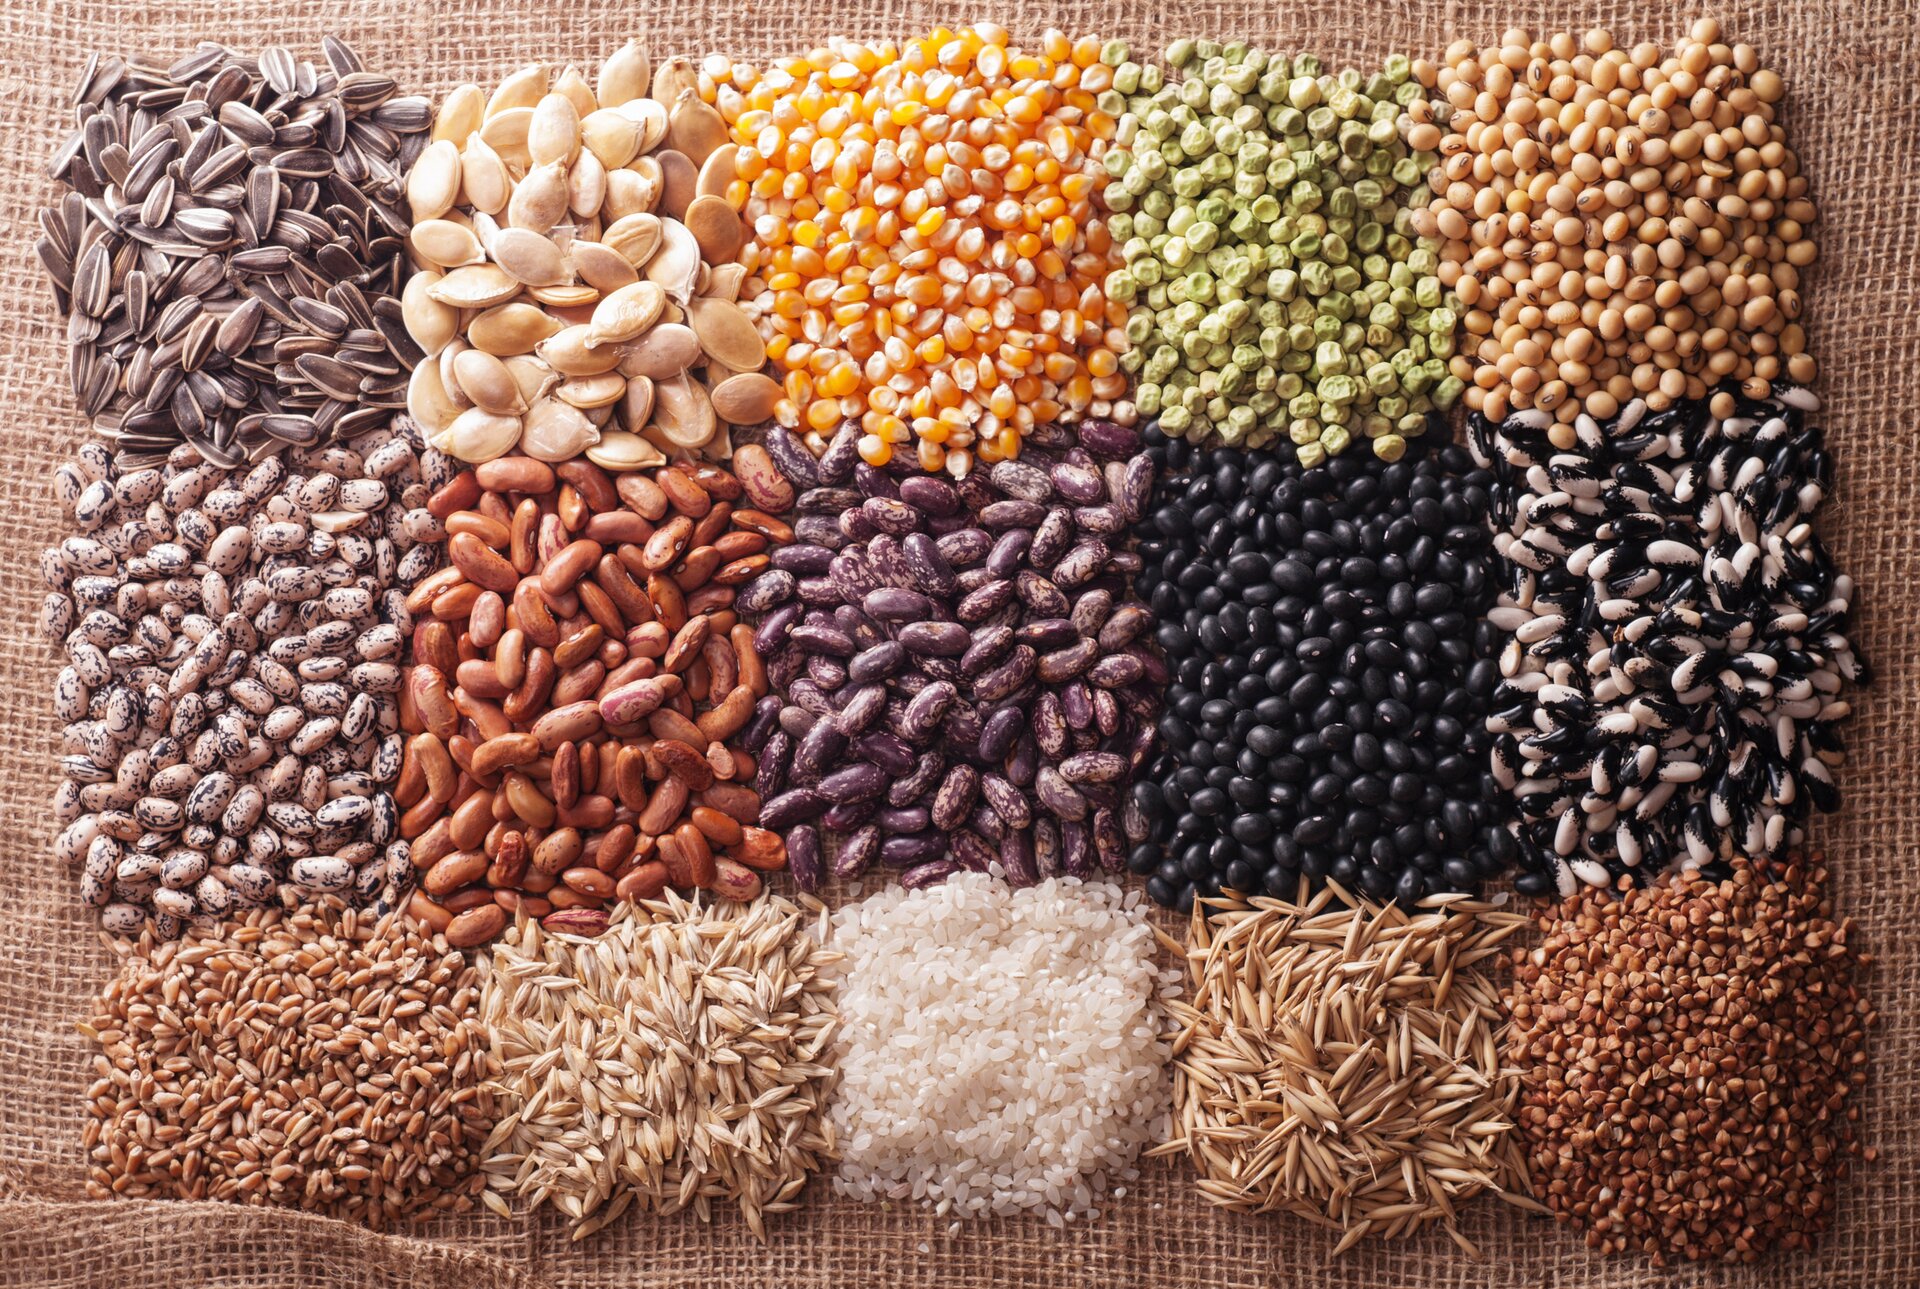 Ilustracja przedstawia zdjęcie piętnastu zbóż. Ziarna zbóż są wyłożone na brązowym materiale. Każde pole to inny rodzaj zboża. Są tam między innymi: słonecznik, kukurydza, groch, fasola, zboże, pszenica, ryż, kasza.